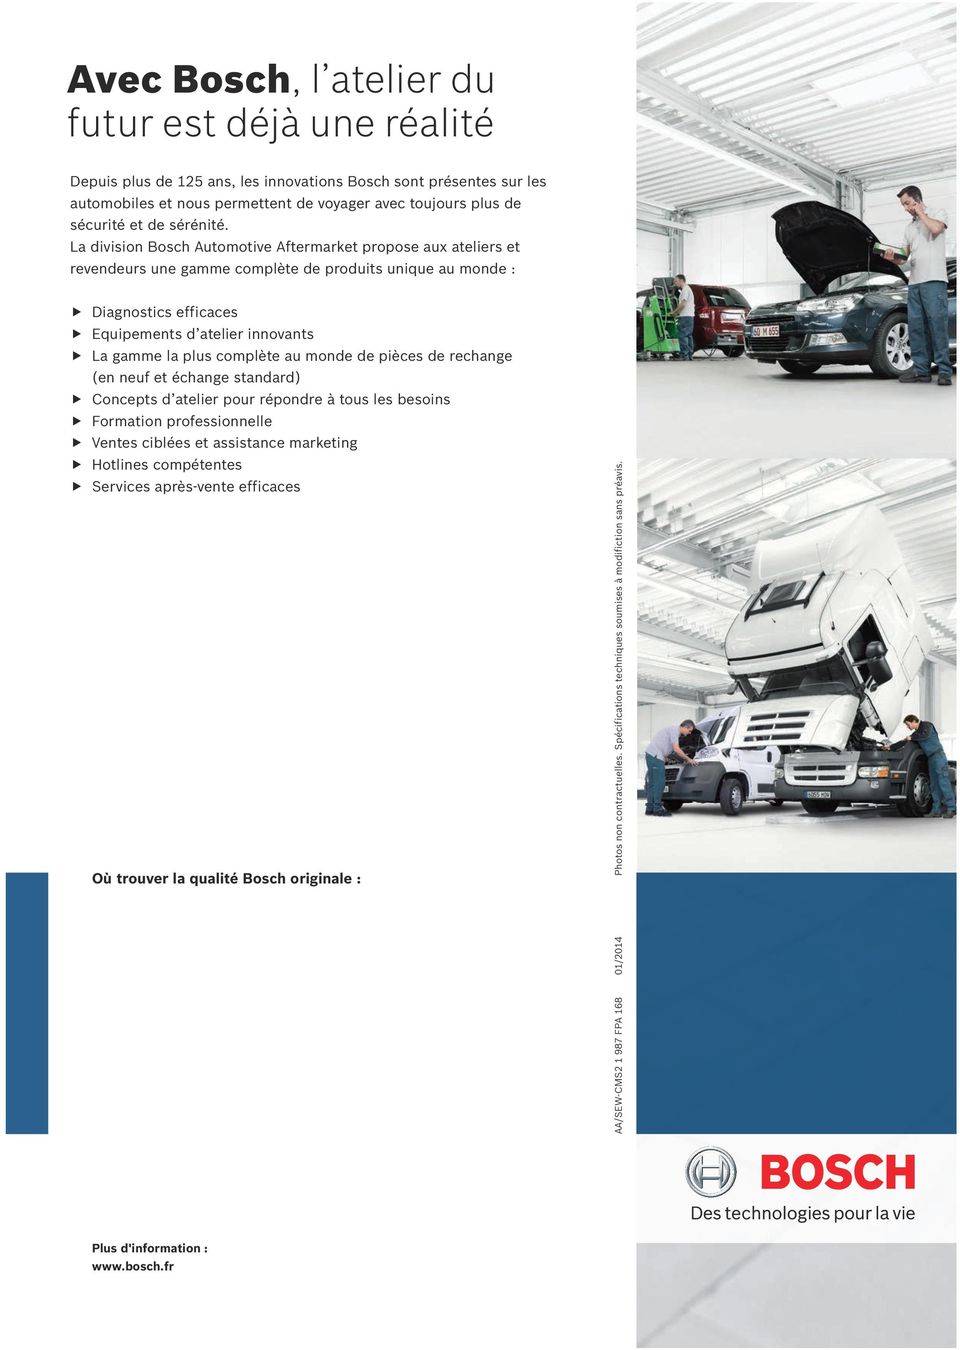 La division Bosch Automotive Aftermarket propose aux ateliers et revendeurs une gamme complète de produits unique au monde : Diagnostics efficaces Equipements d atelier innovants La gamme la plus